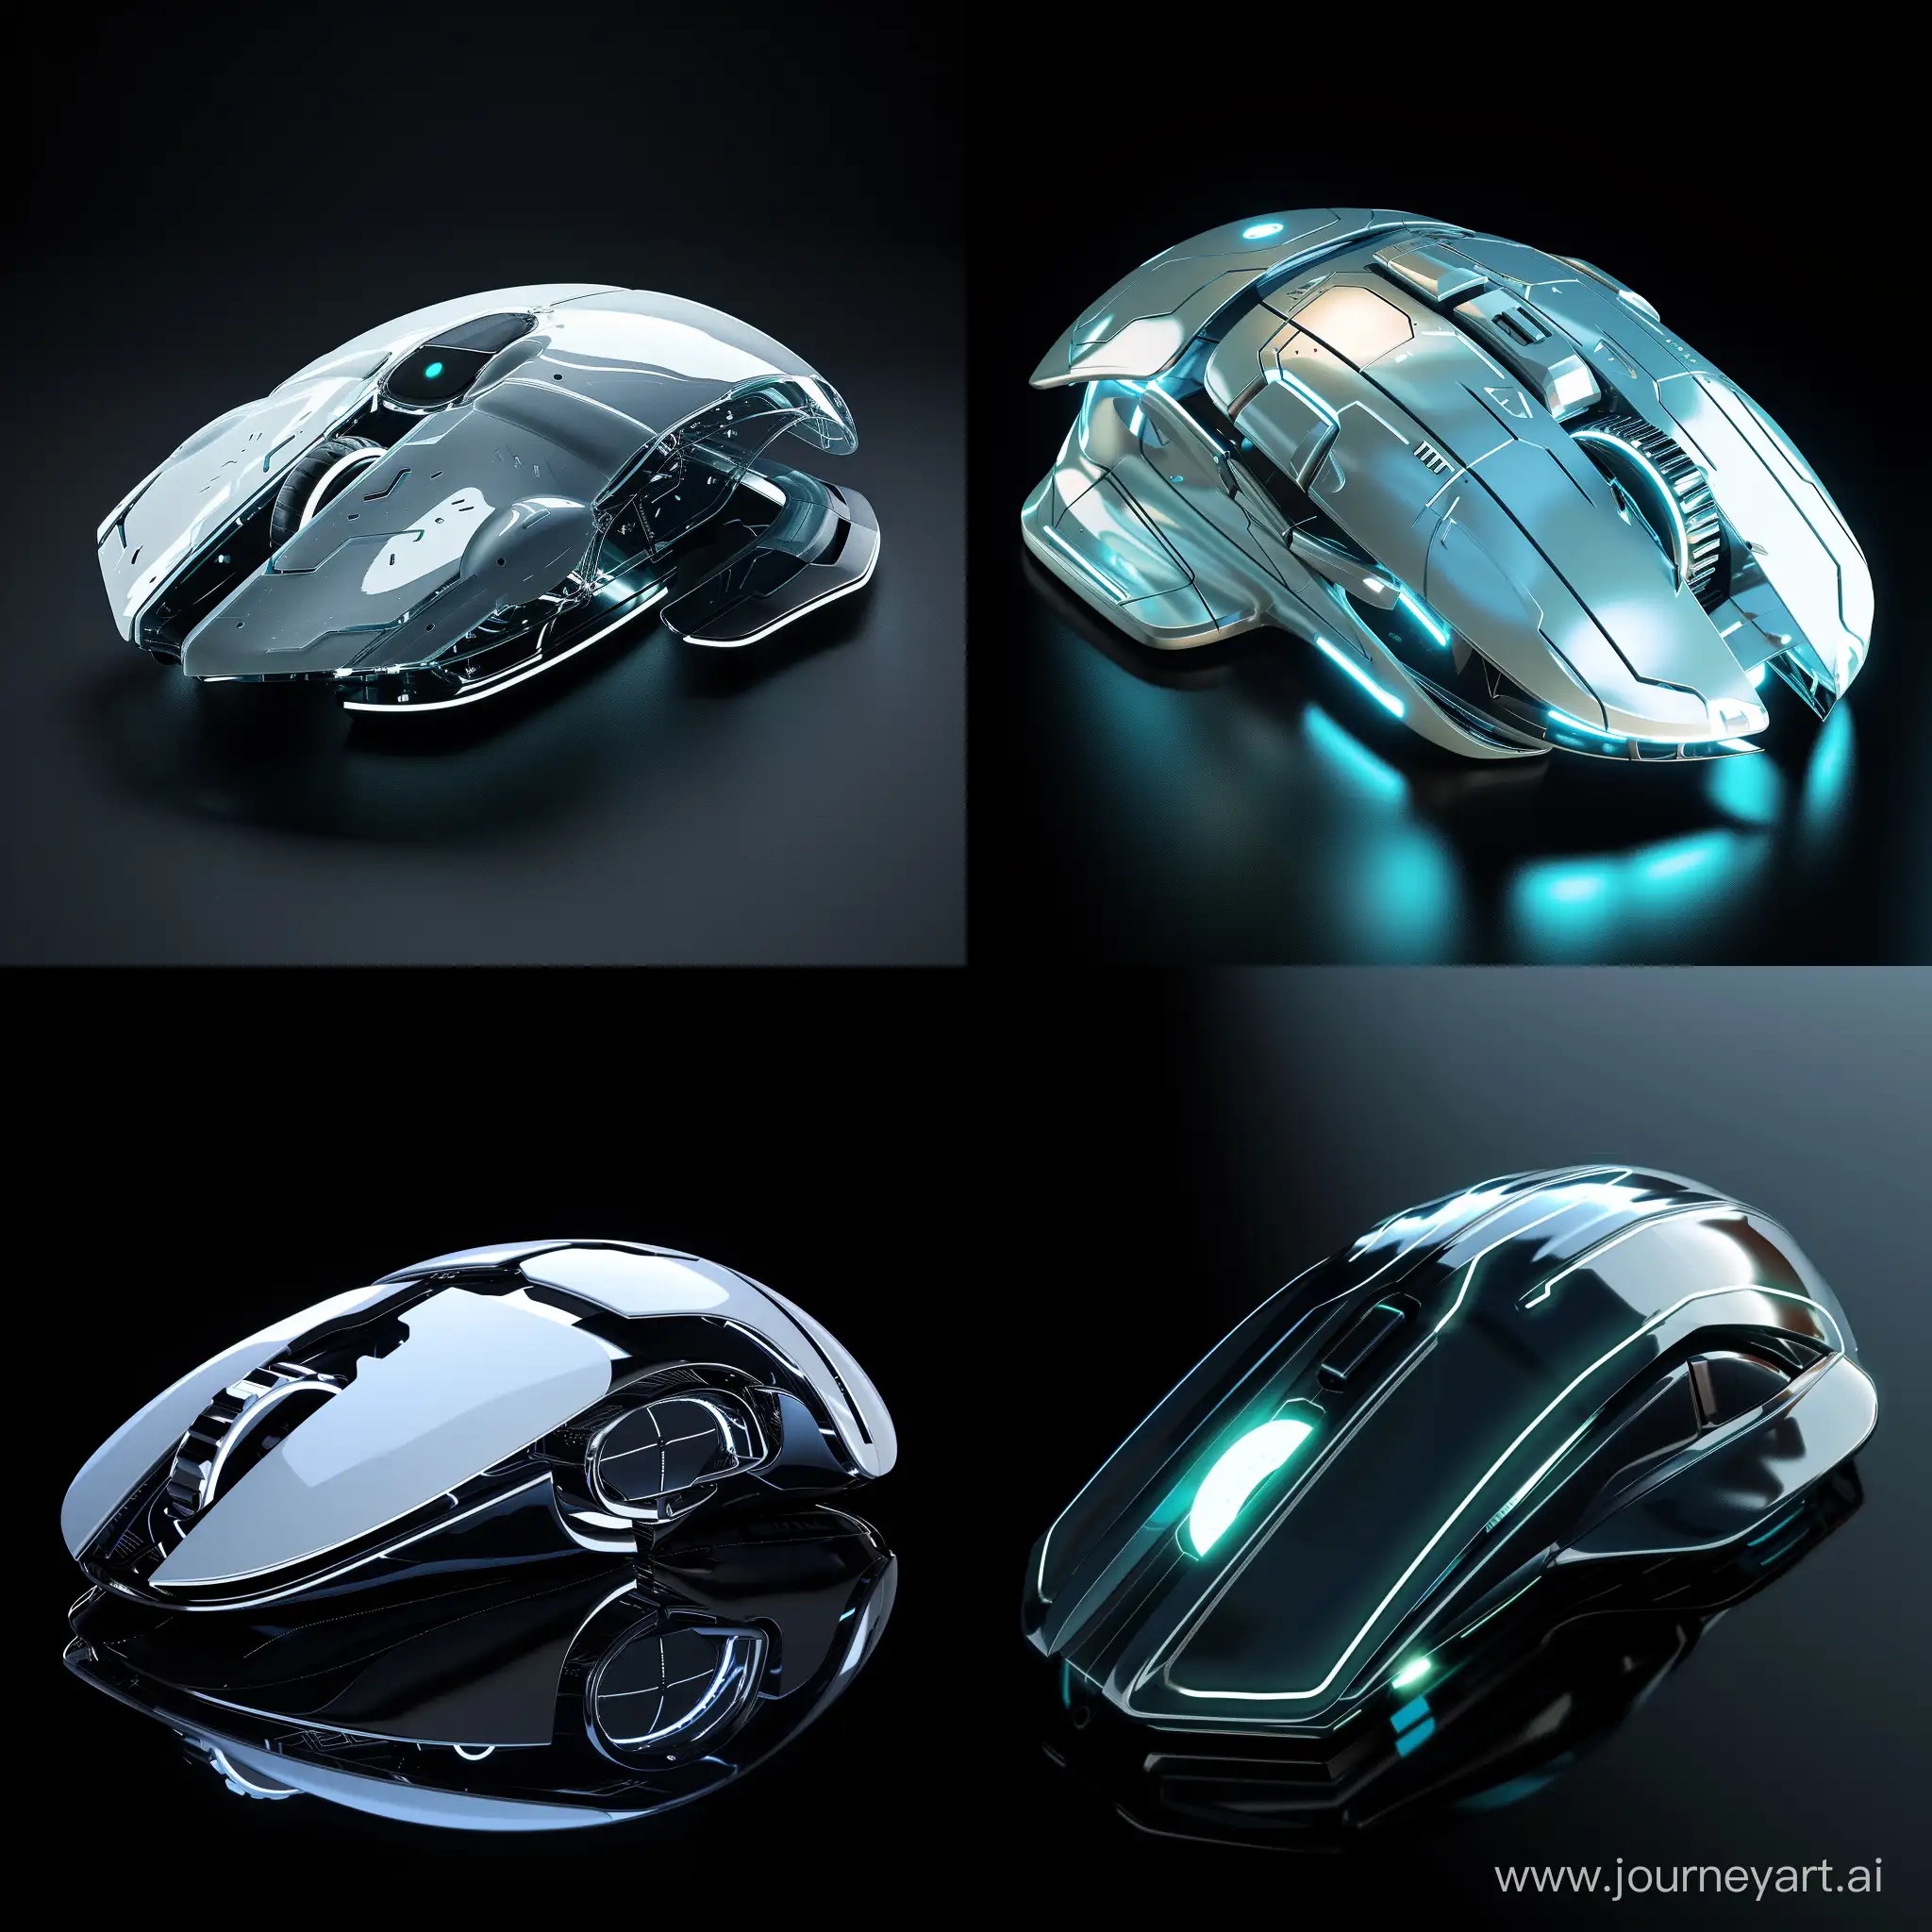 Futuristic PC mouse, in futuristic style